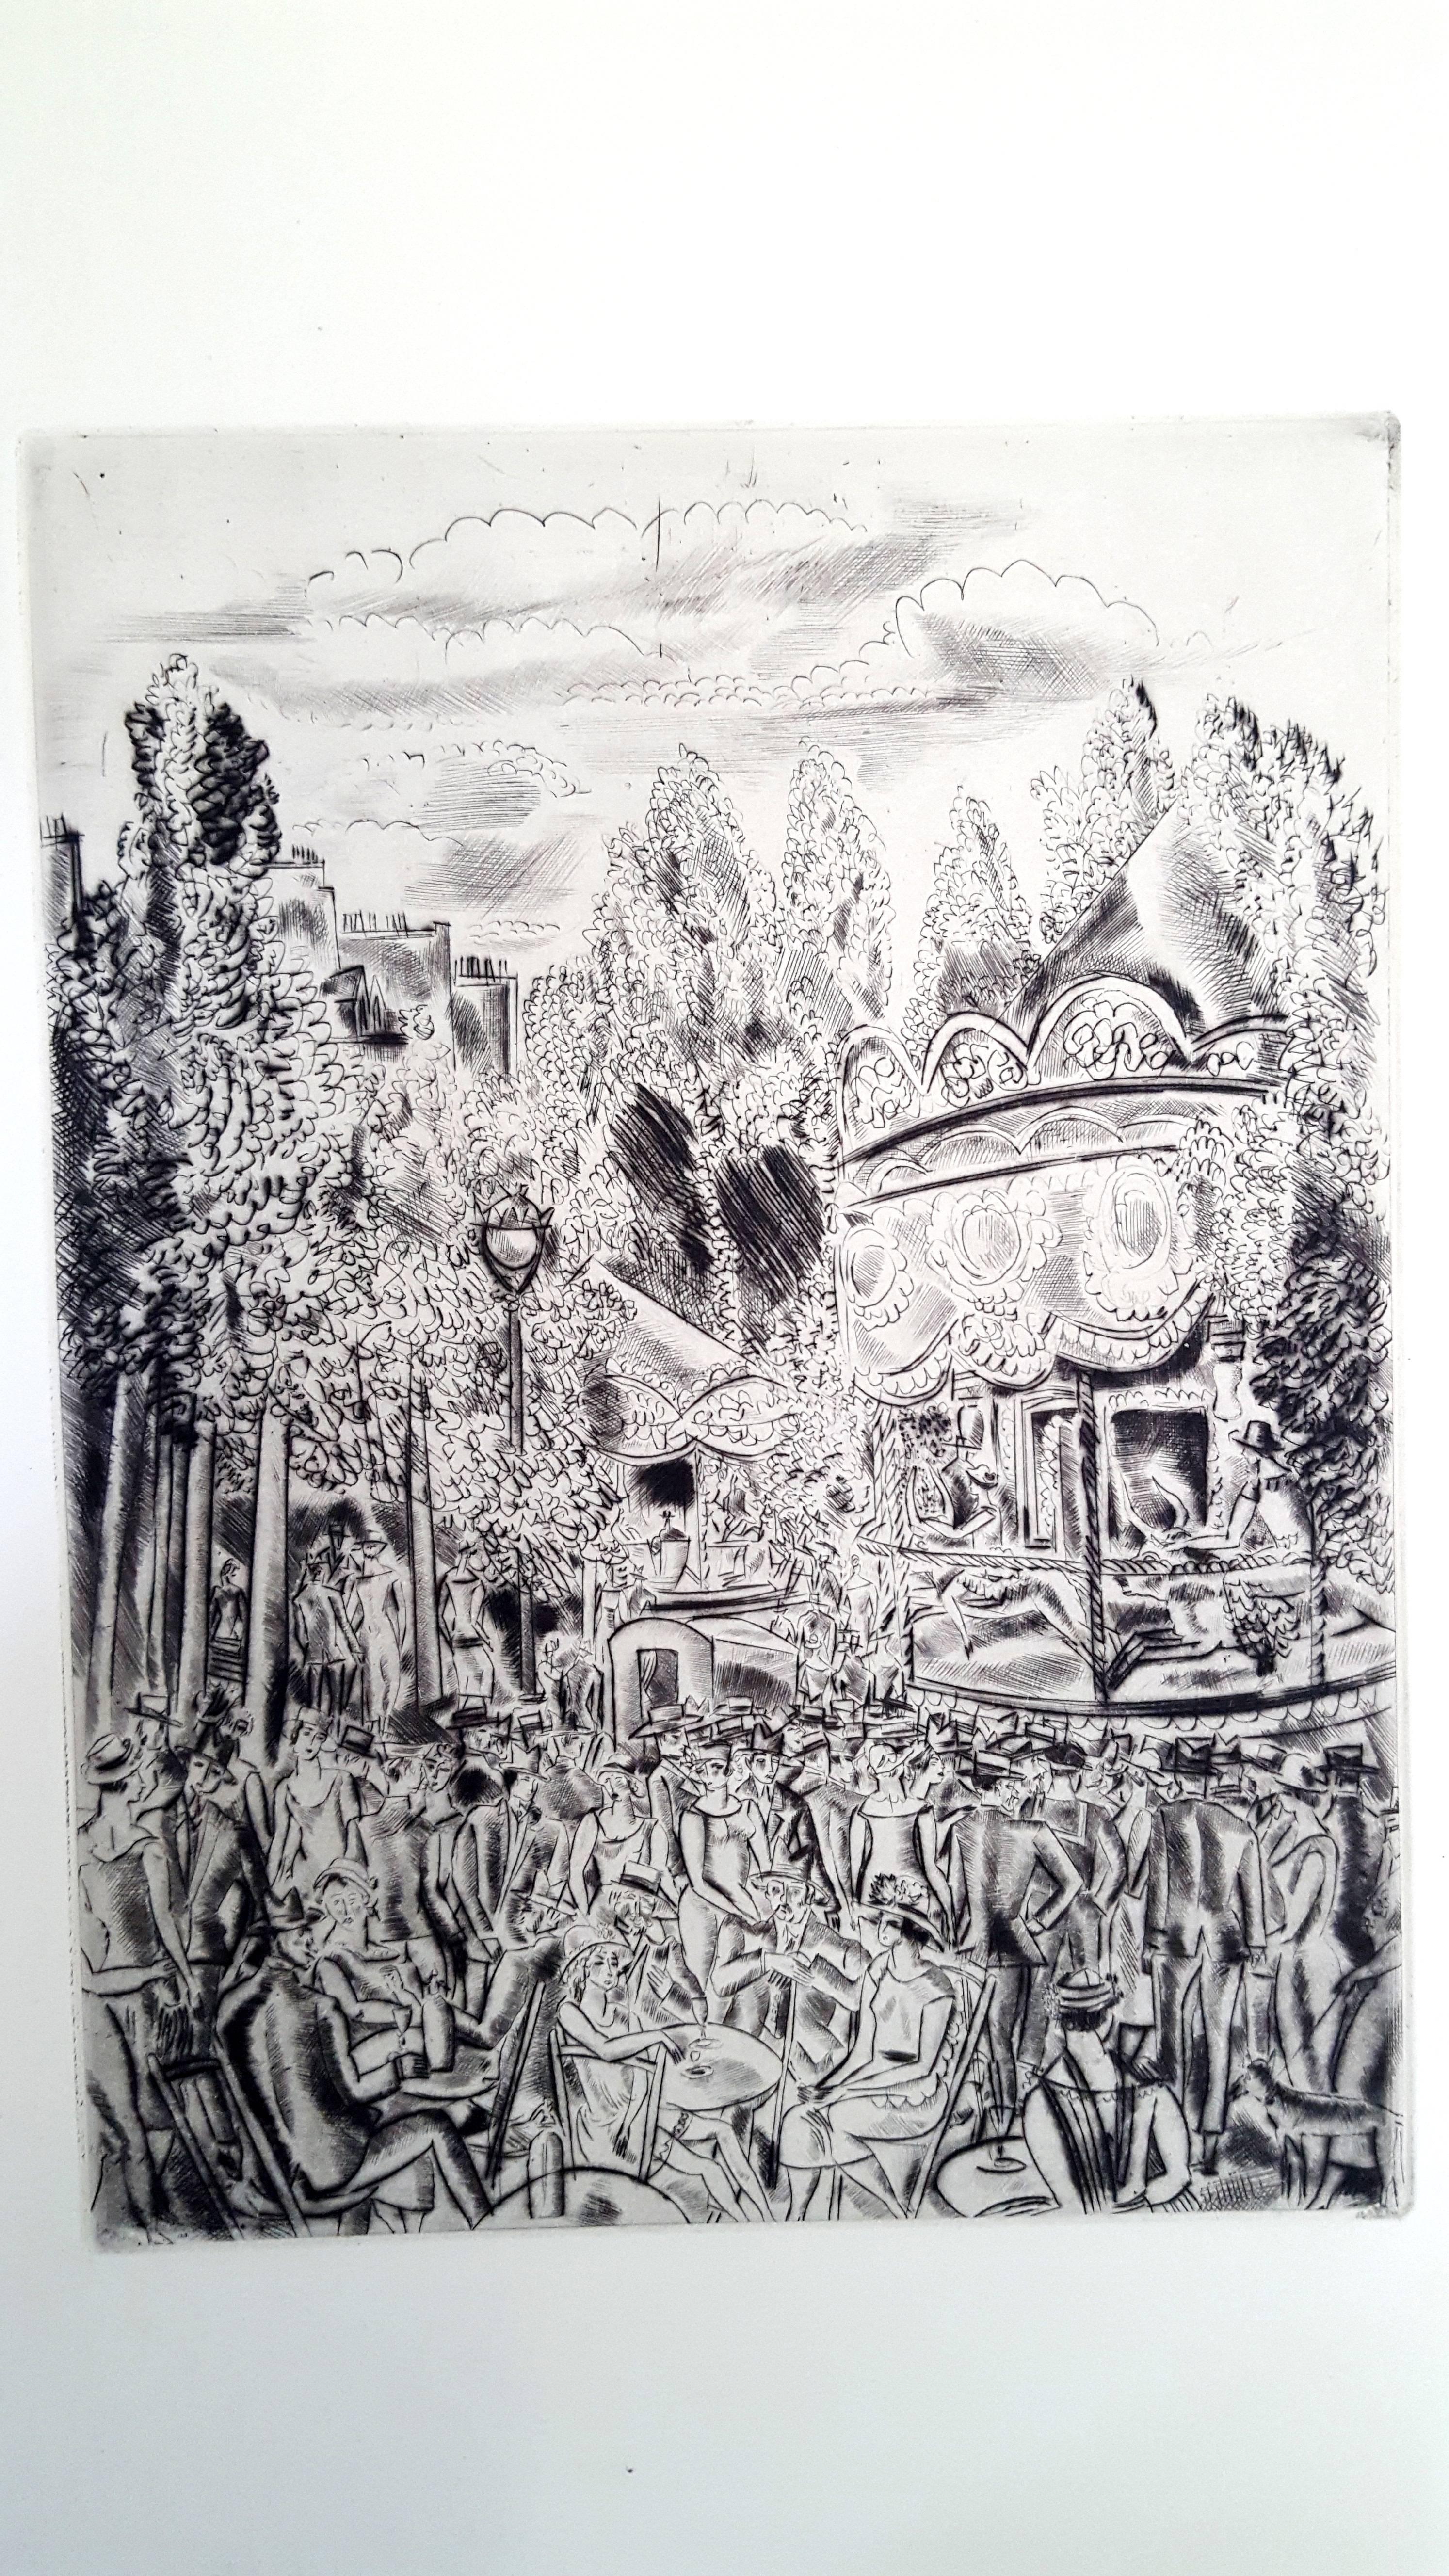 Hermine David - Montmartre's Party - Original Engraving
Dimensions : 13 x 10&quot;. 
Paper : Rives vellum. 
Edition : 225 copies.
1927
From Tableaux de Paris, Emile-Paul Freres, Paris

CHARLES MARTIN	(French	/ 1884-1934)

Charles Martin was born in